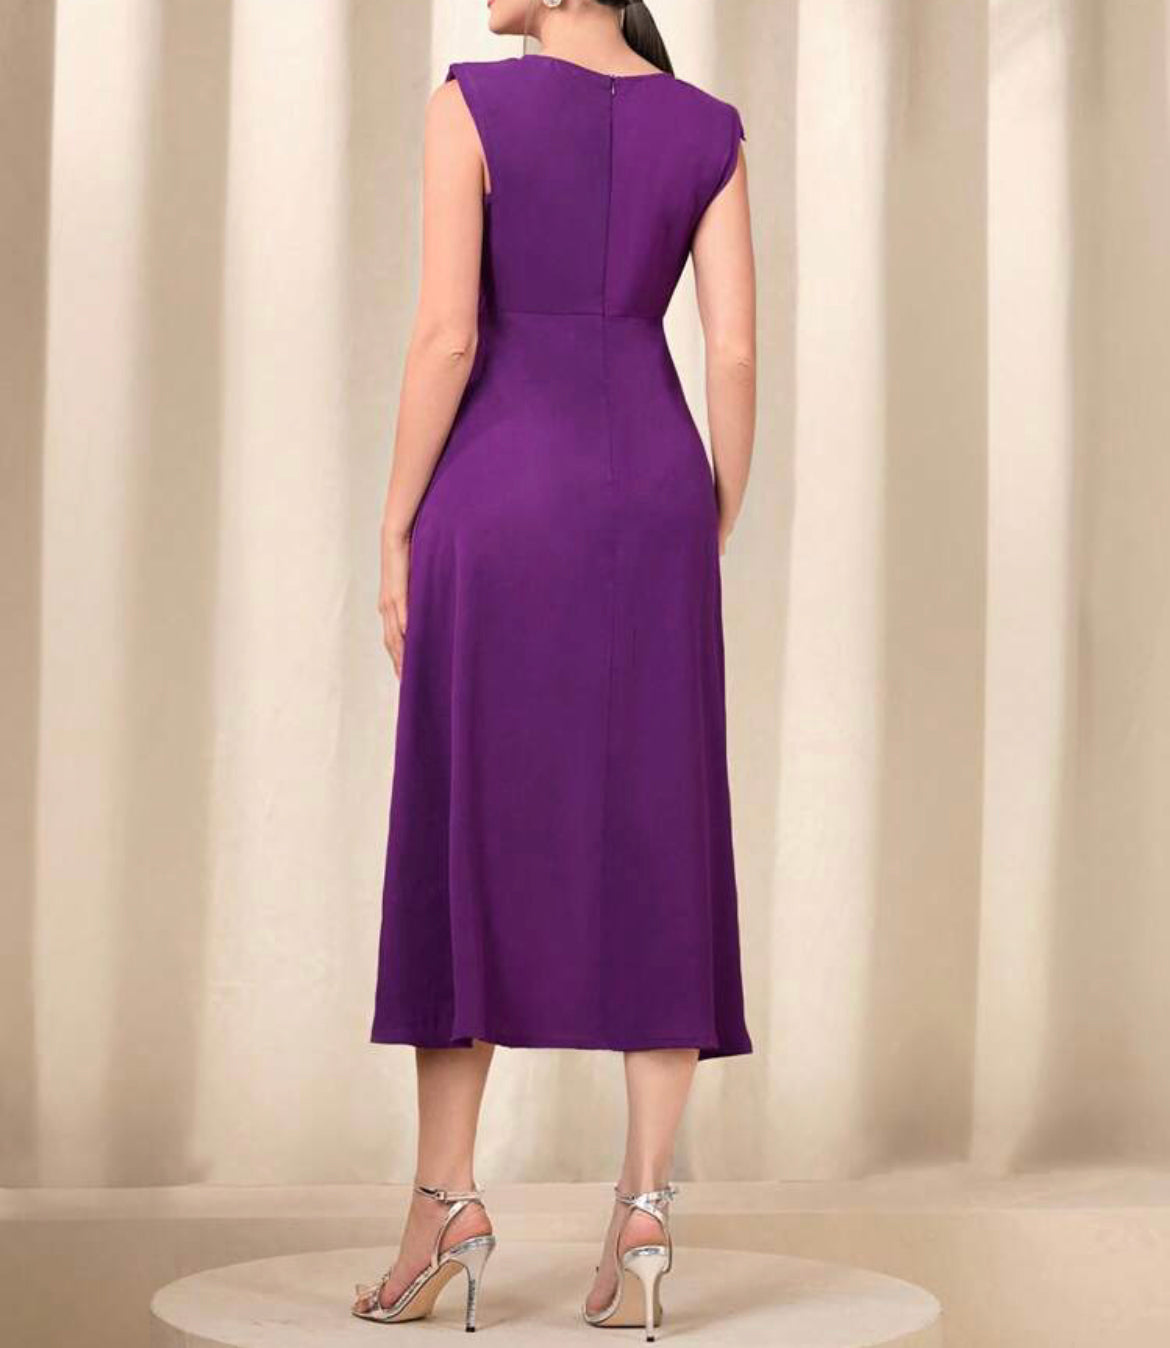 Vestido ocasional violeta/roxo